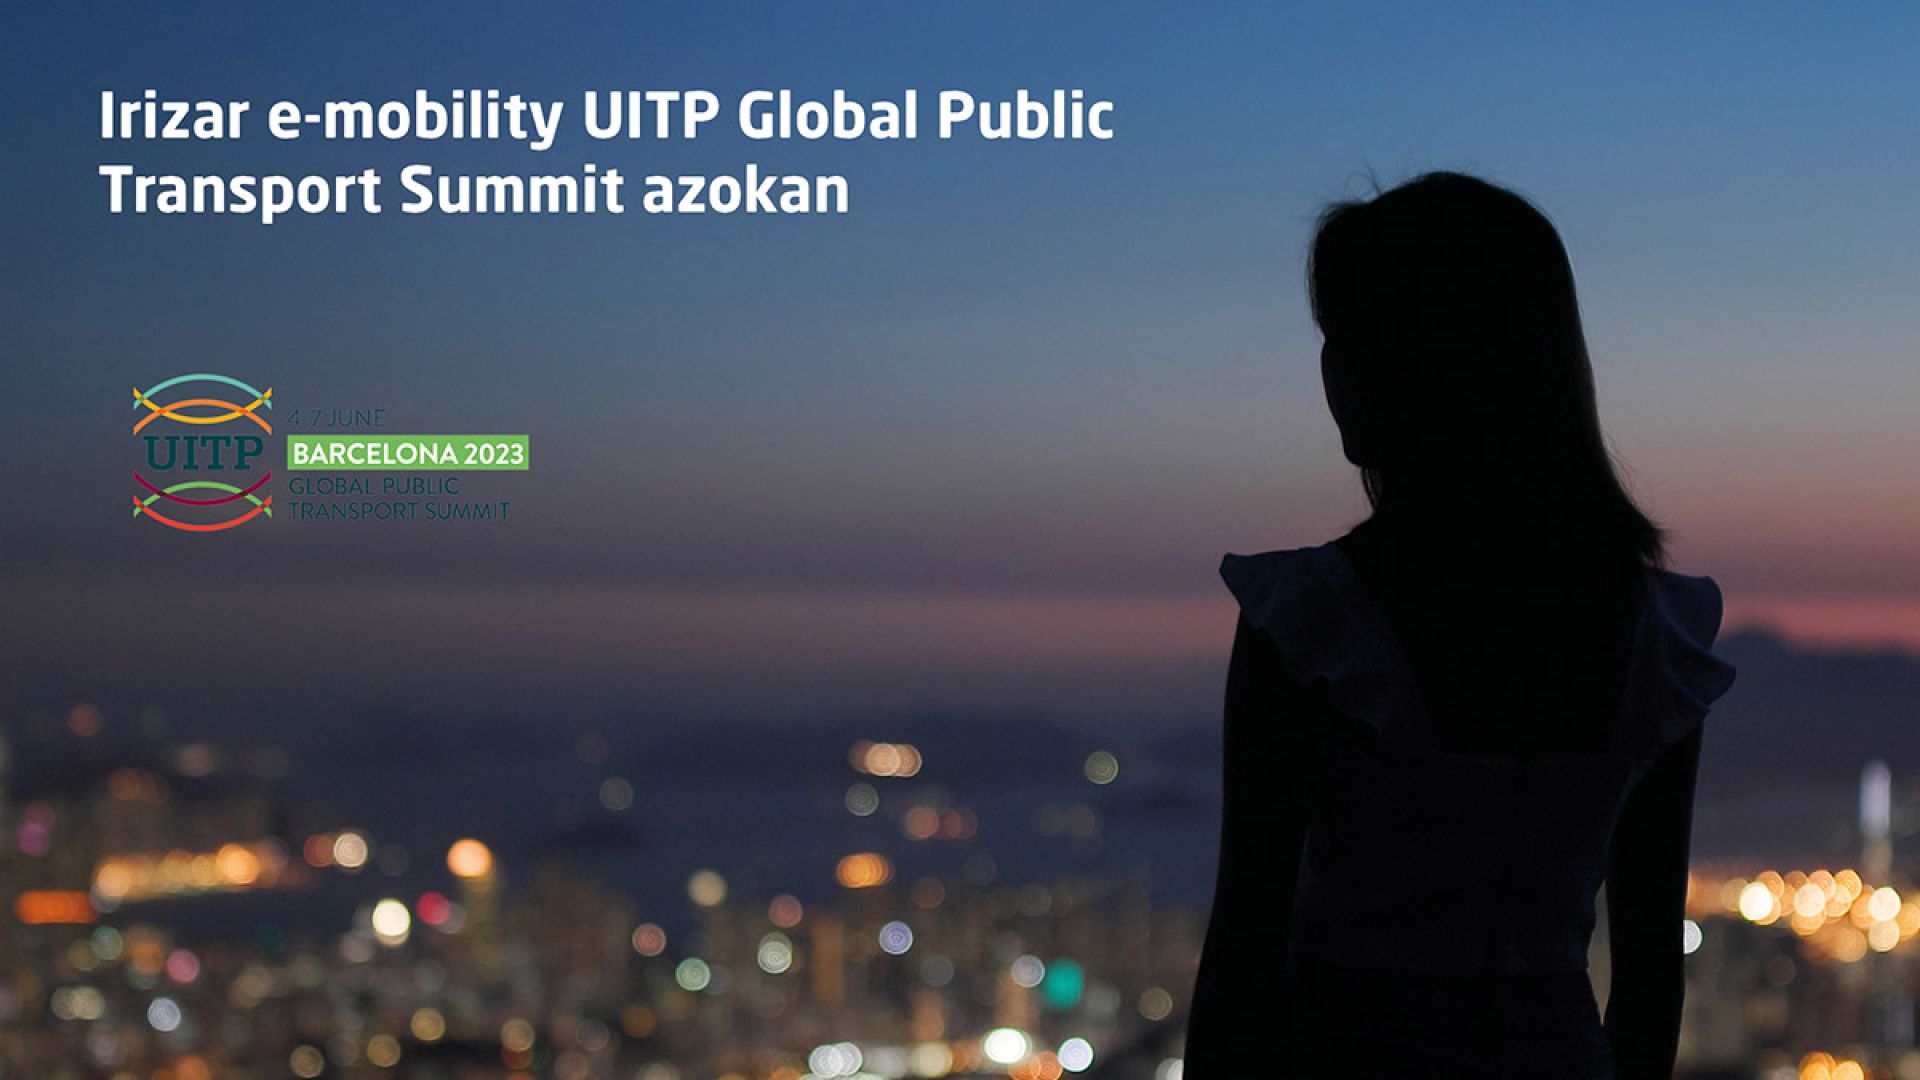 Irizar e-mobility UITP Global Public Transport Summit azokan egongo da